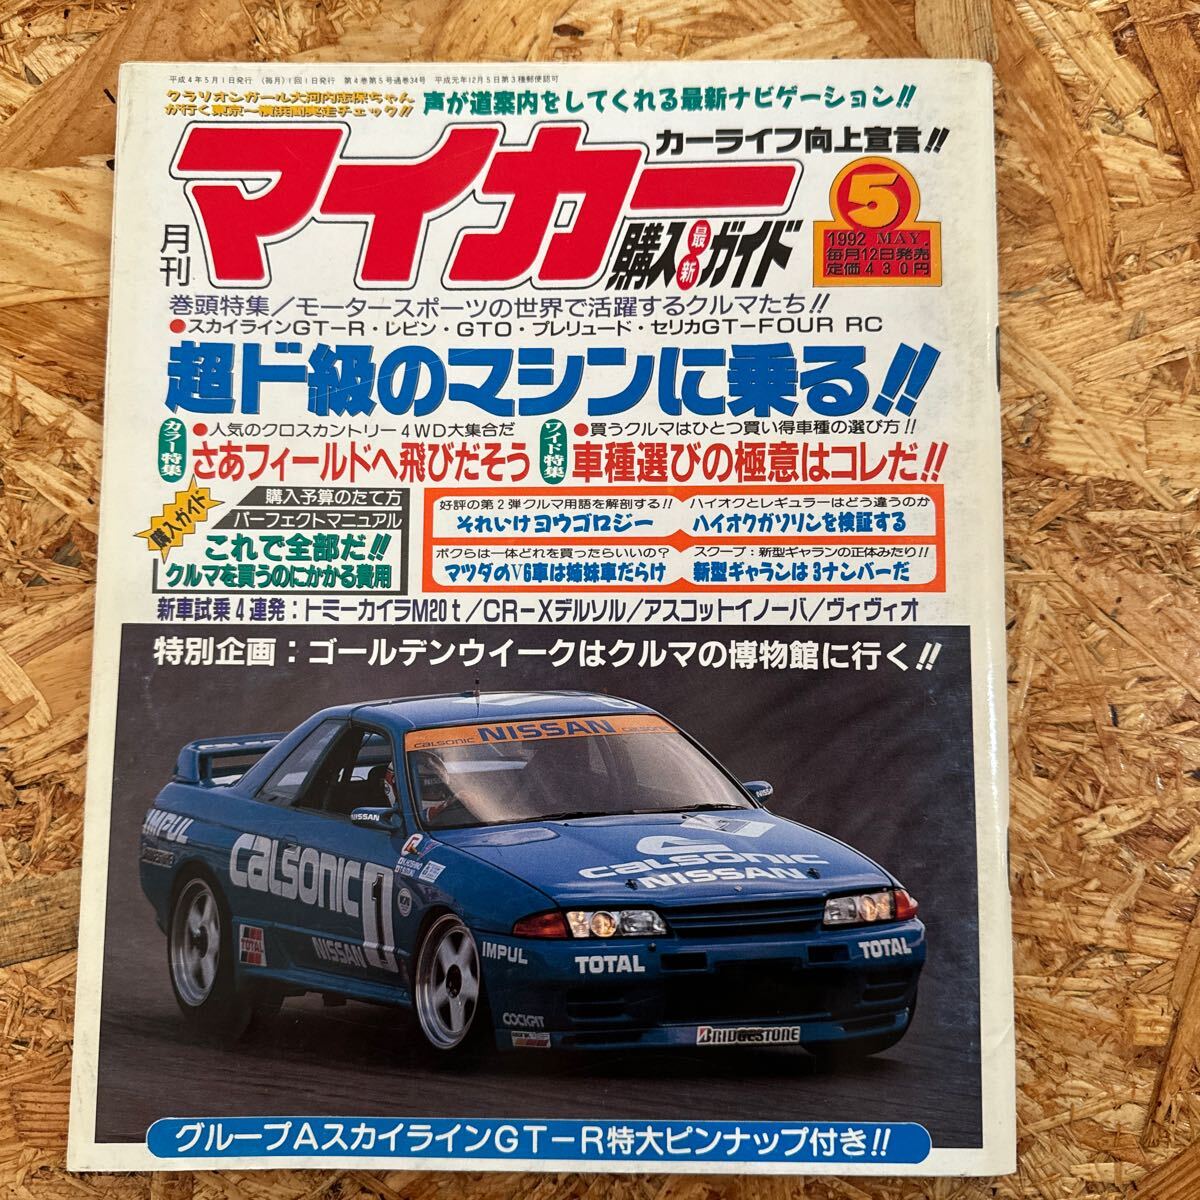 月刊マイカー 5月号 1992年 平成4年 スカイライン GT-R ユーノス オートザム オートラマ アンフィニ マツダ ビックホーン テルスター_画像1